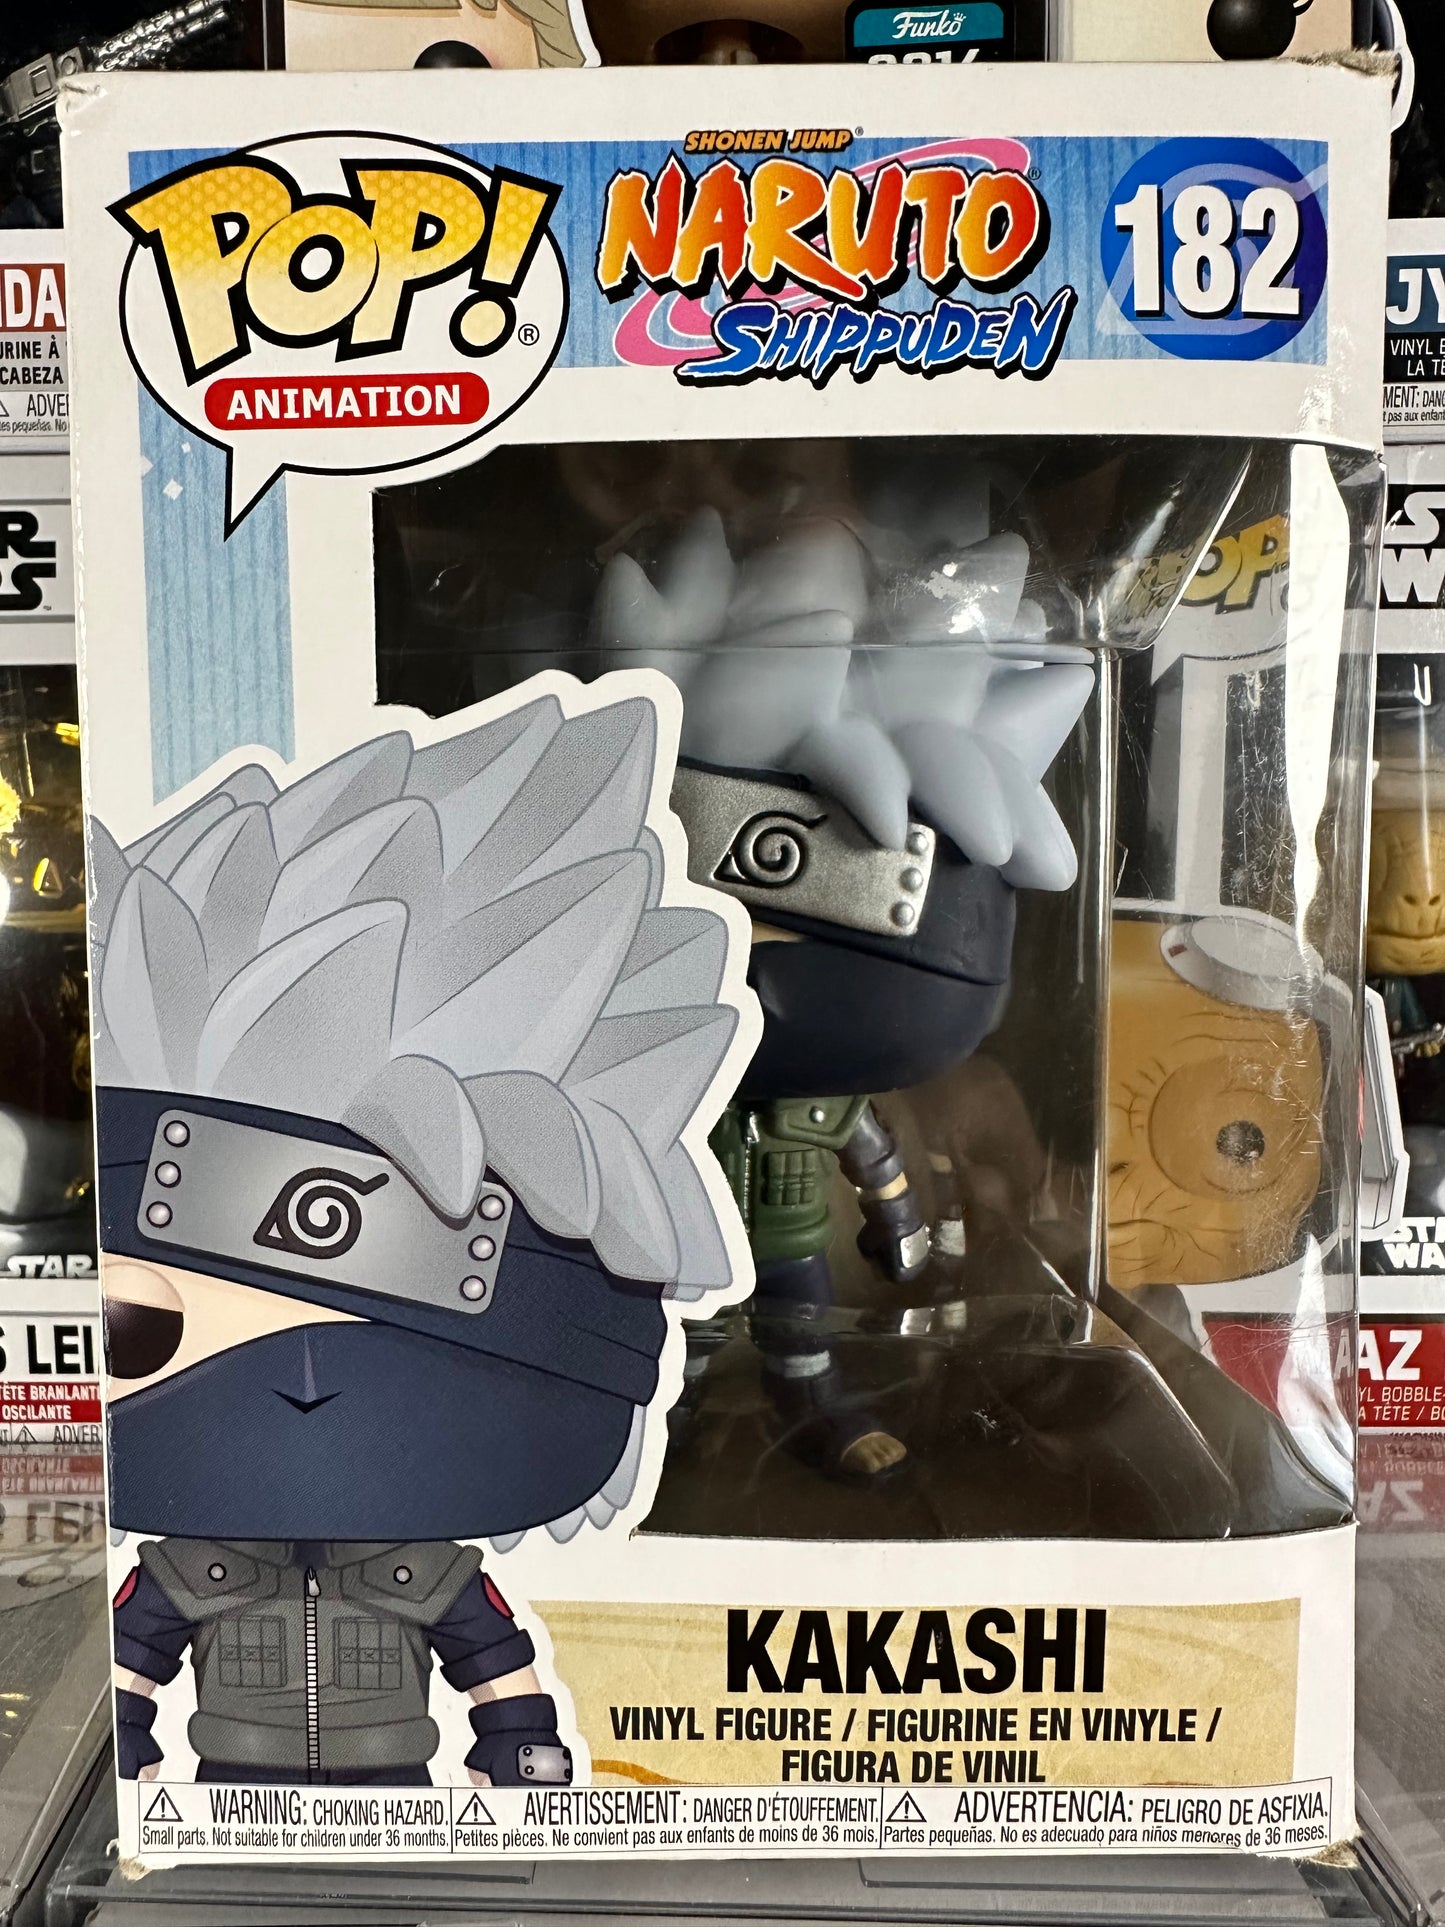 Naruto Shippuden - Kakashi (182)